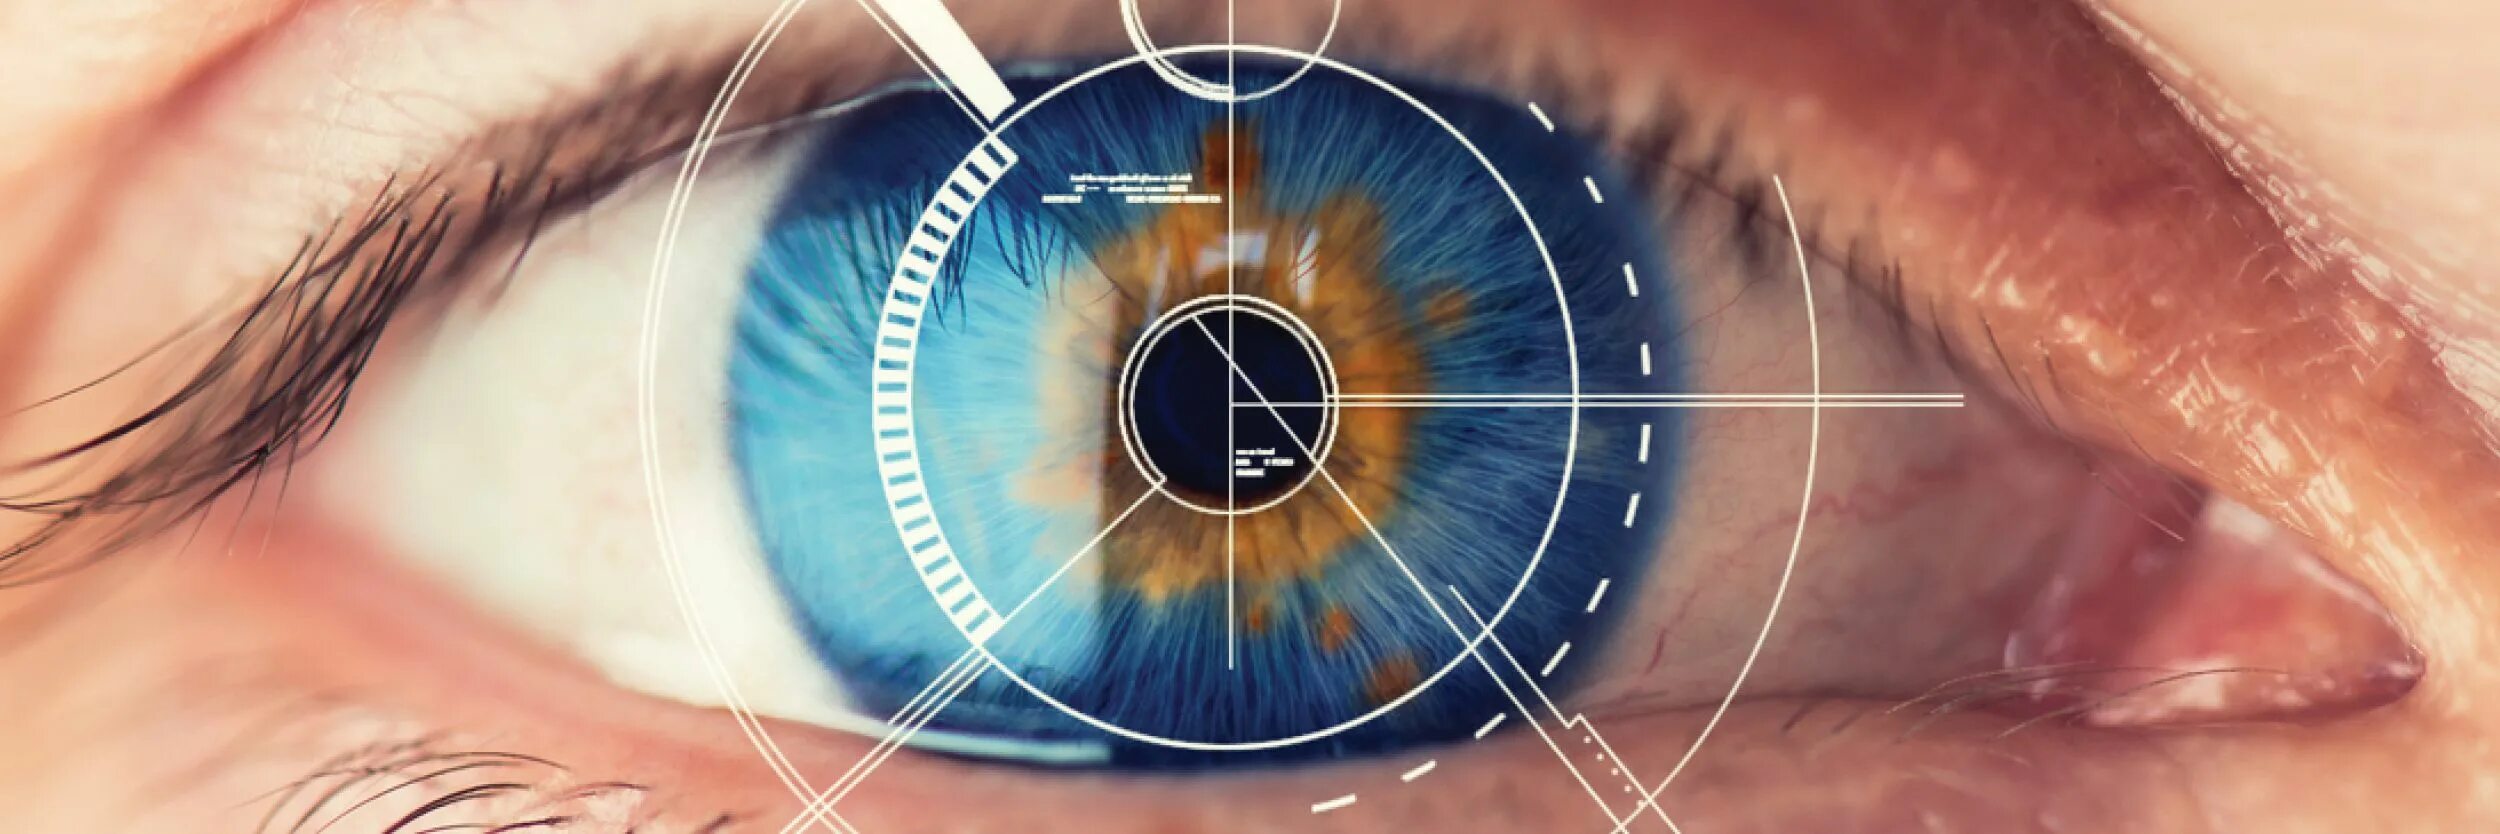 Сетчатка глаза биометрия. Сканер по радужной оболочке глаза. Коррекция зрения лазером.